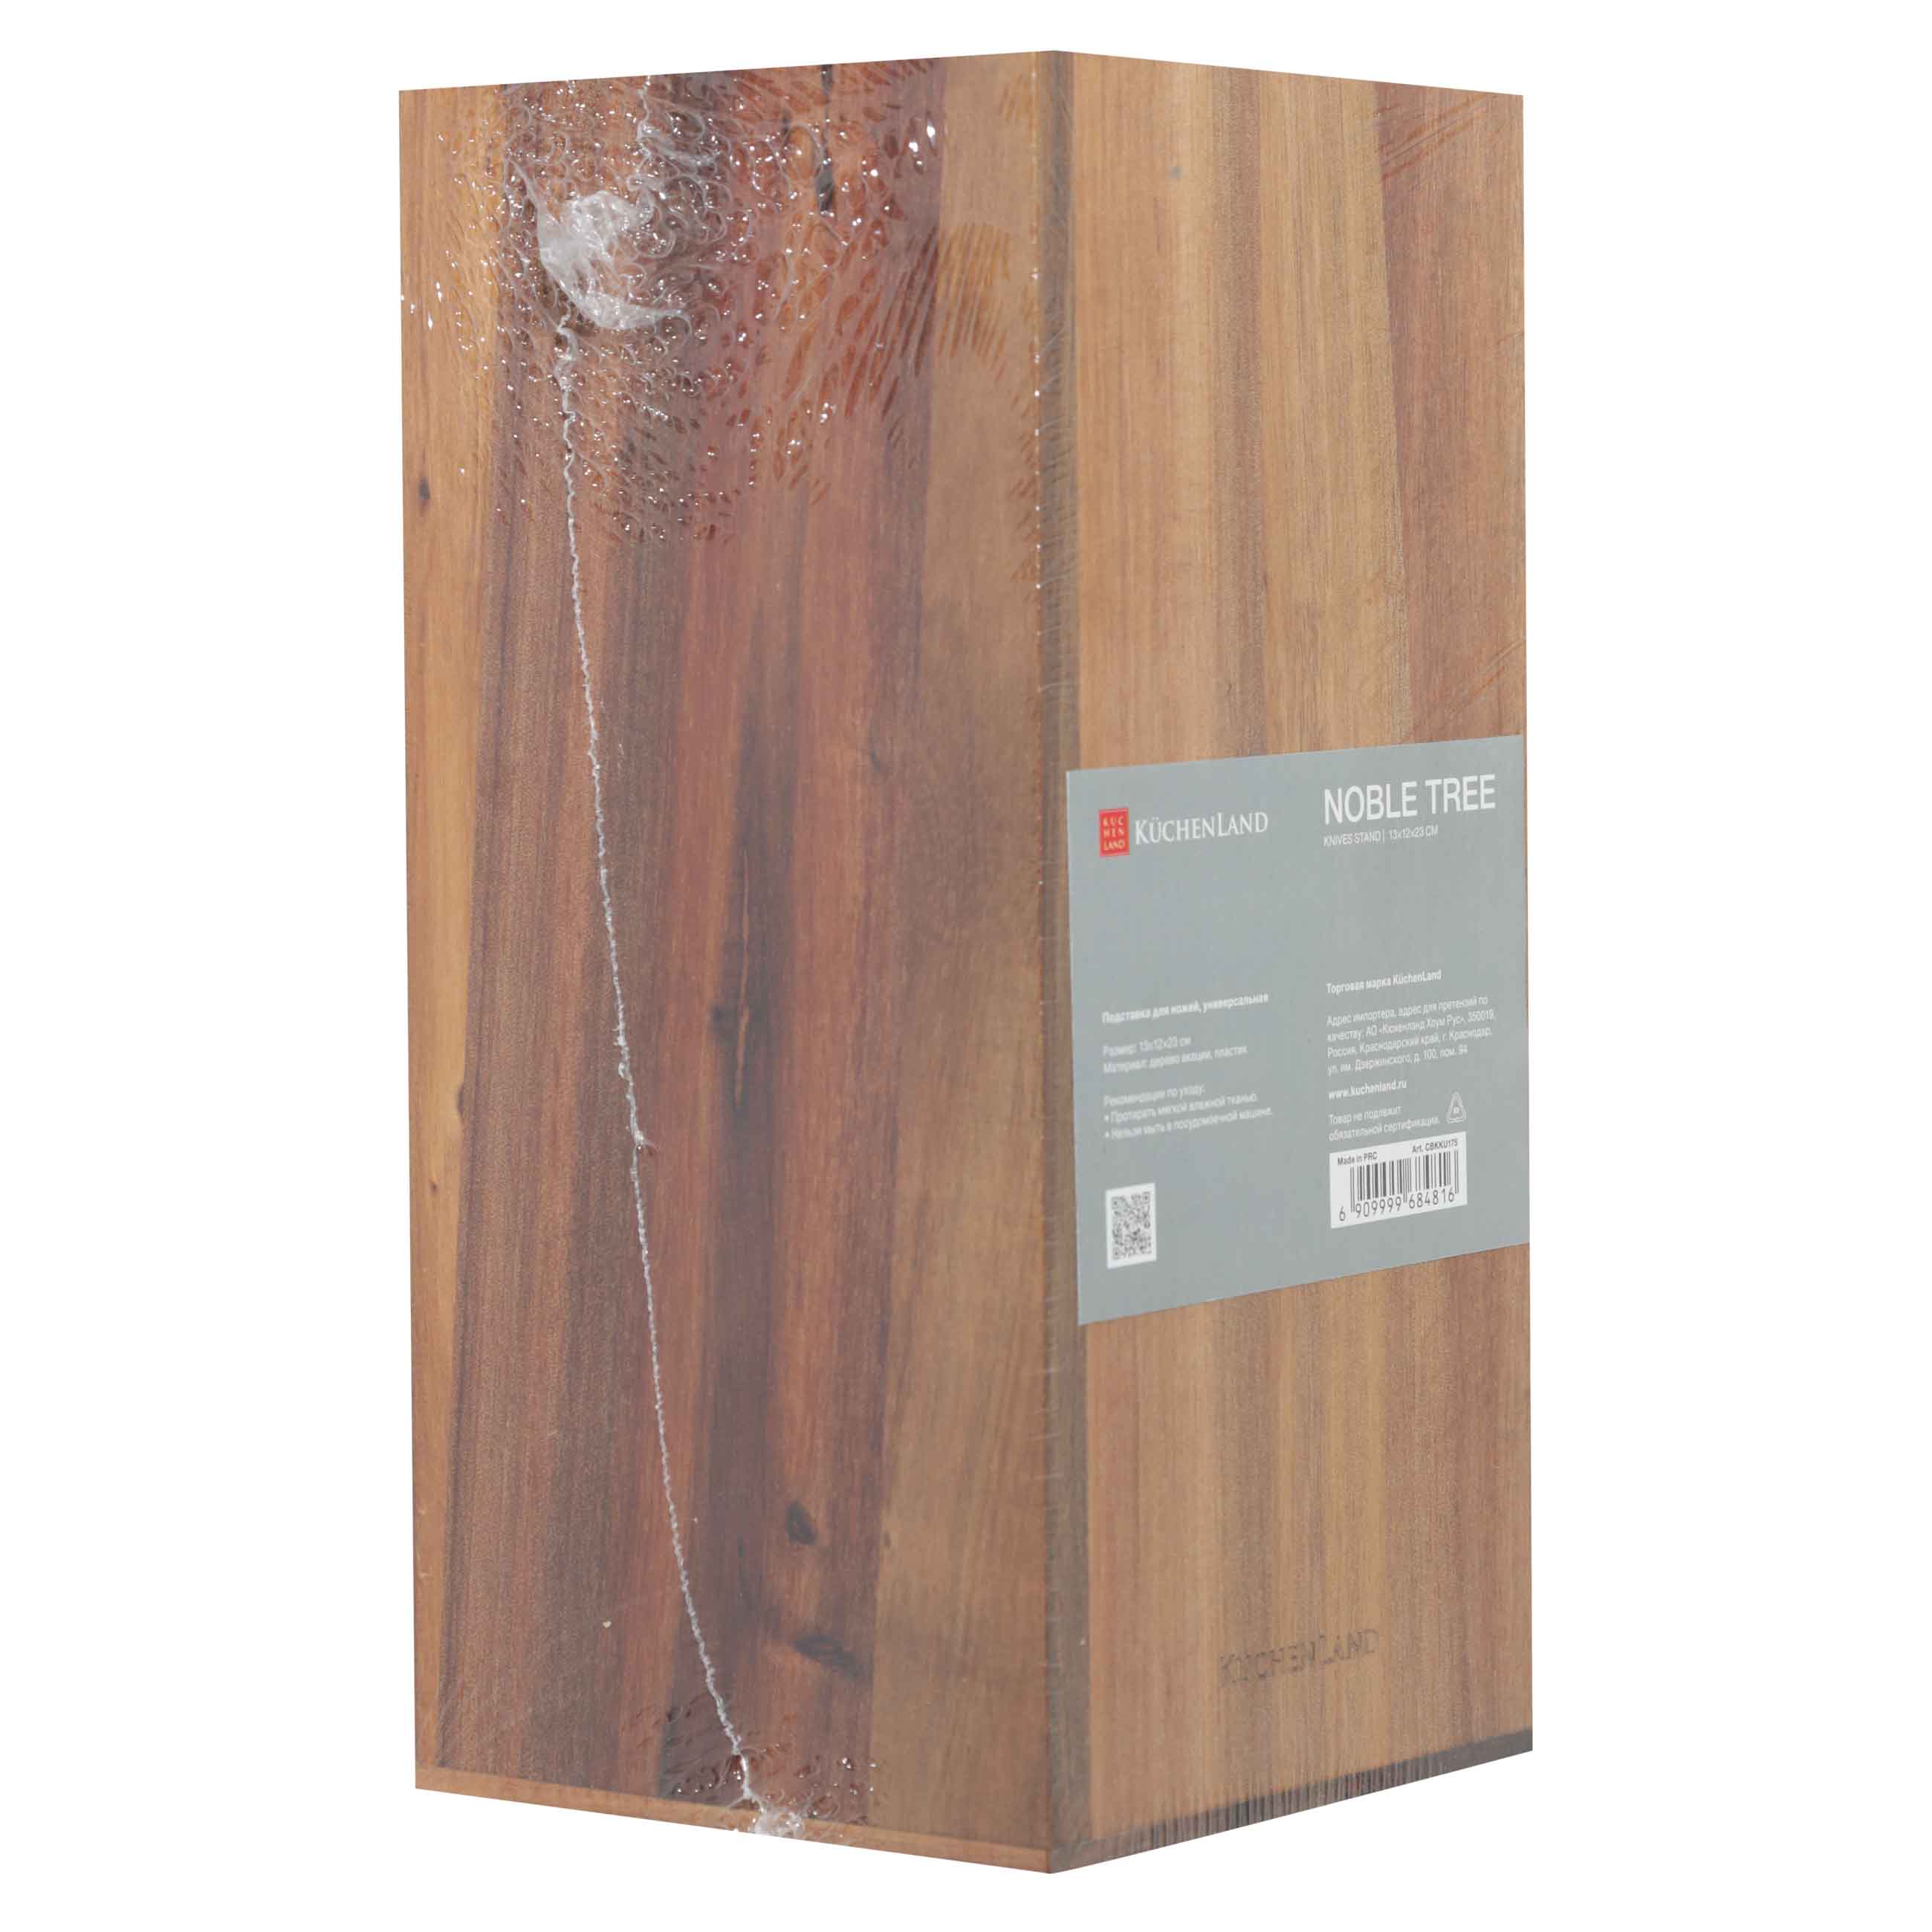 Подставка для ножей, 23 см, универсальная, дерево/пластик, Noble tree